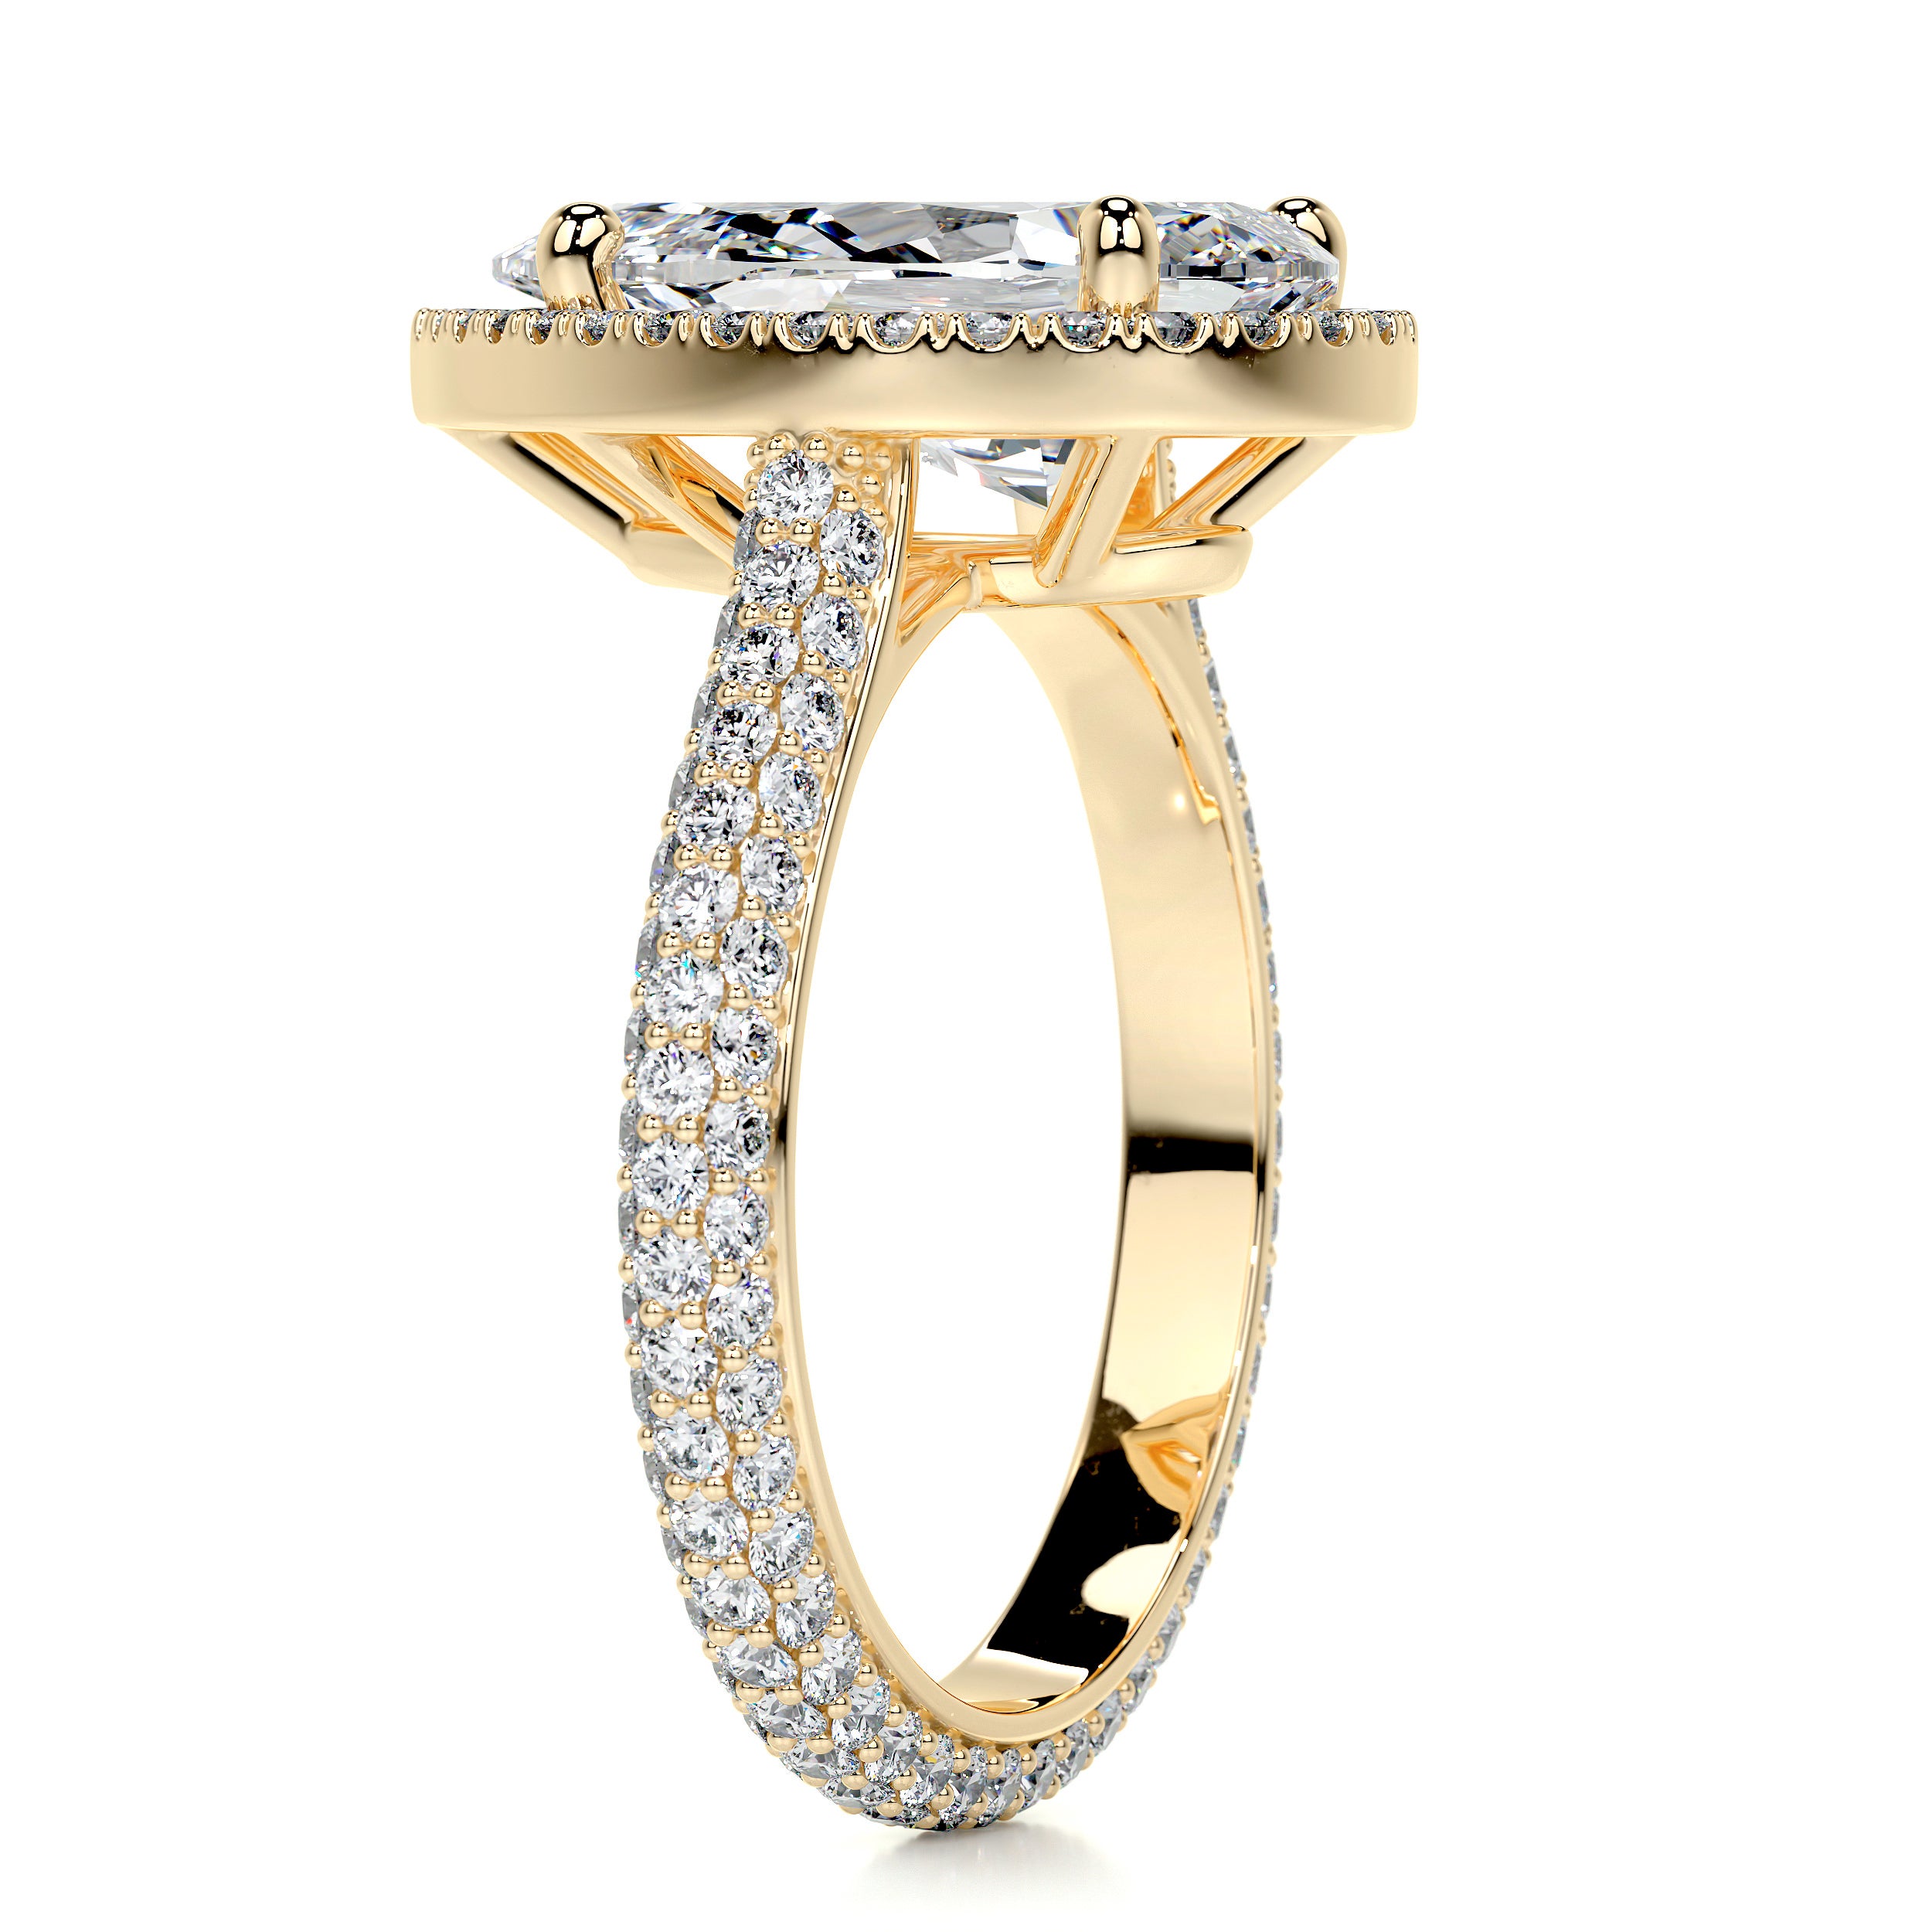 Margarita Diamond Engagement Ring   (3.5 Carat) -18K Yellow Gold